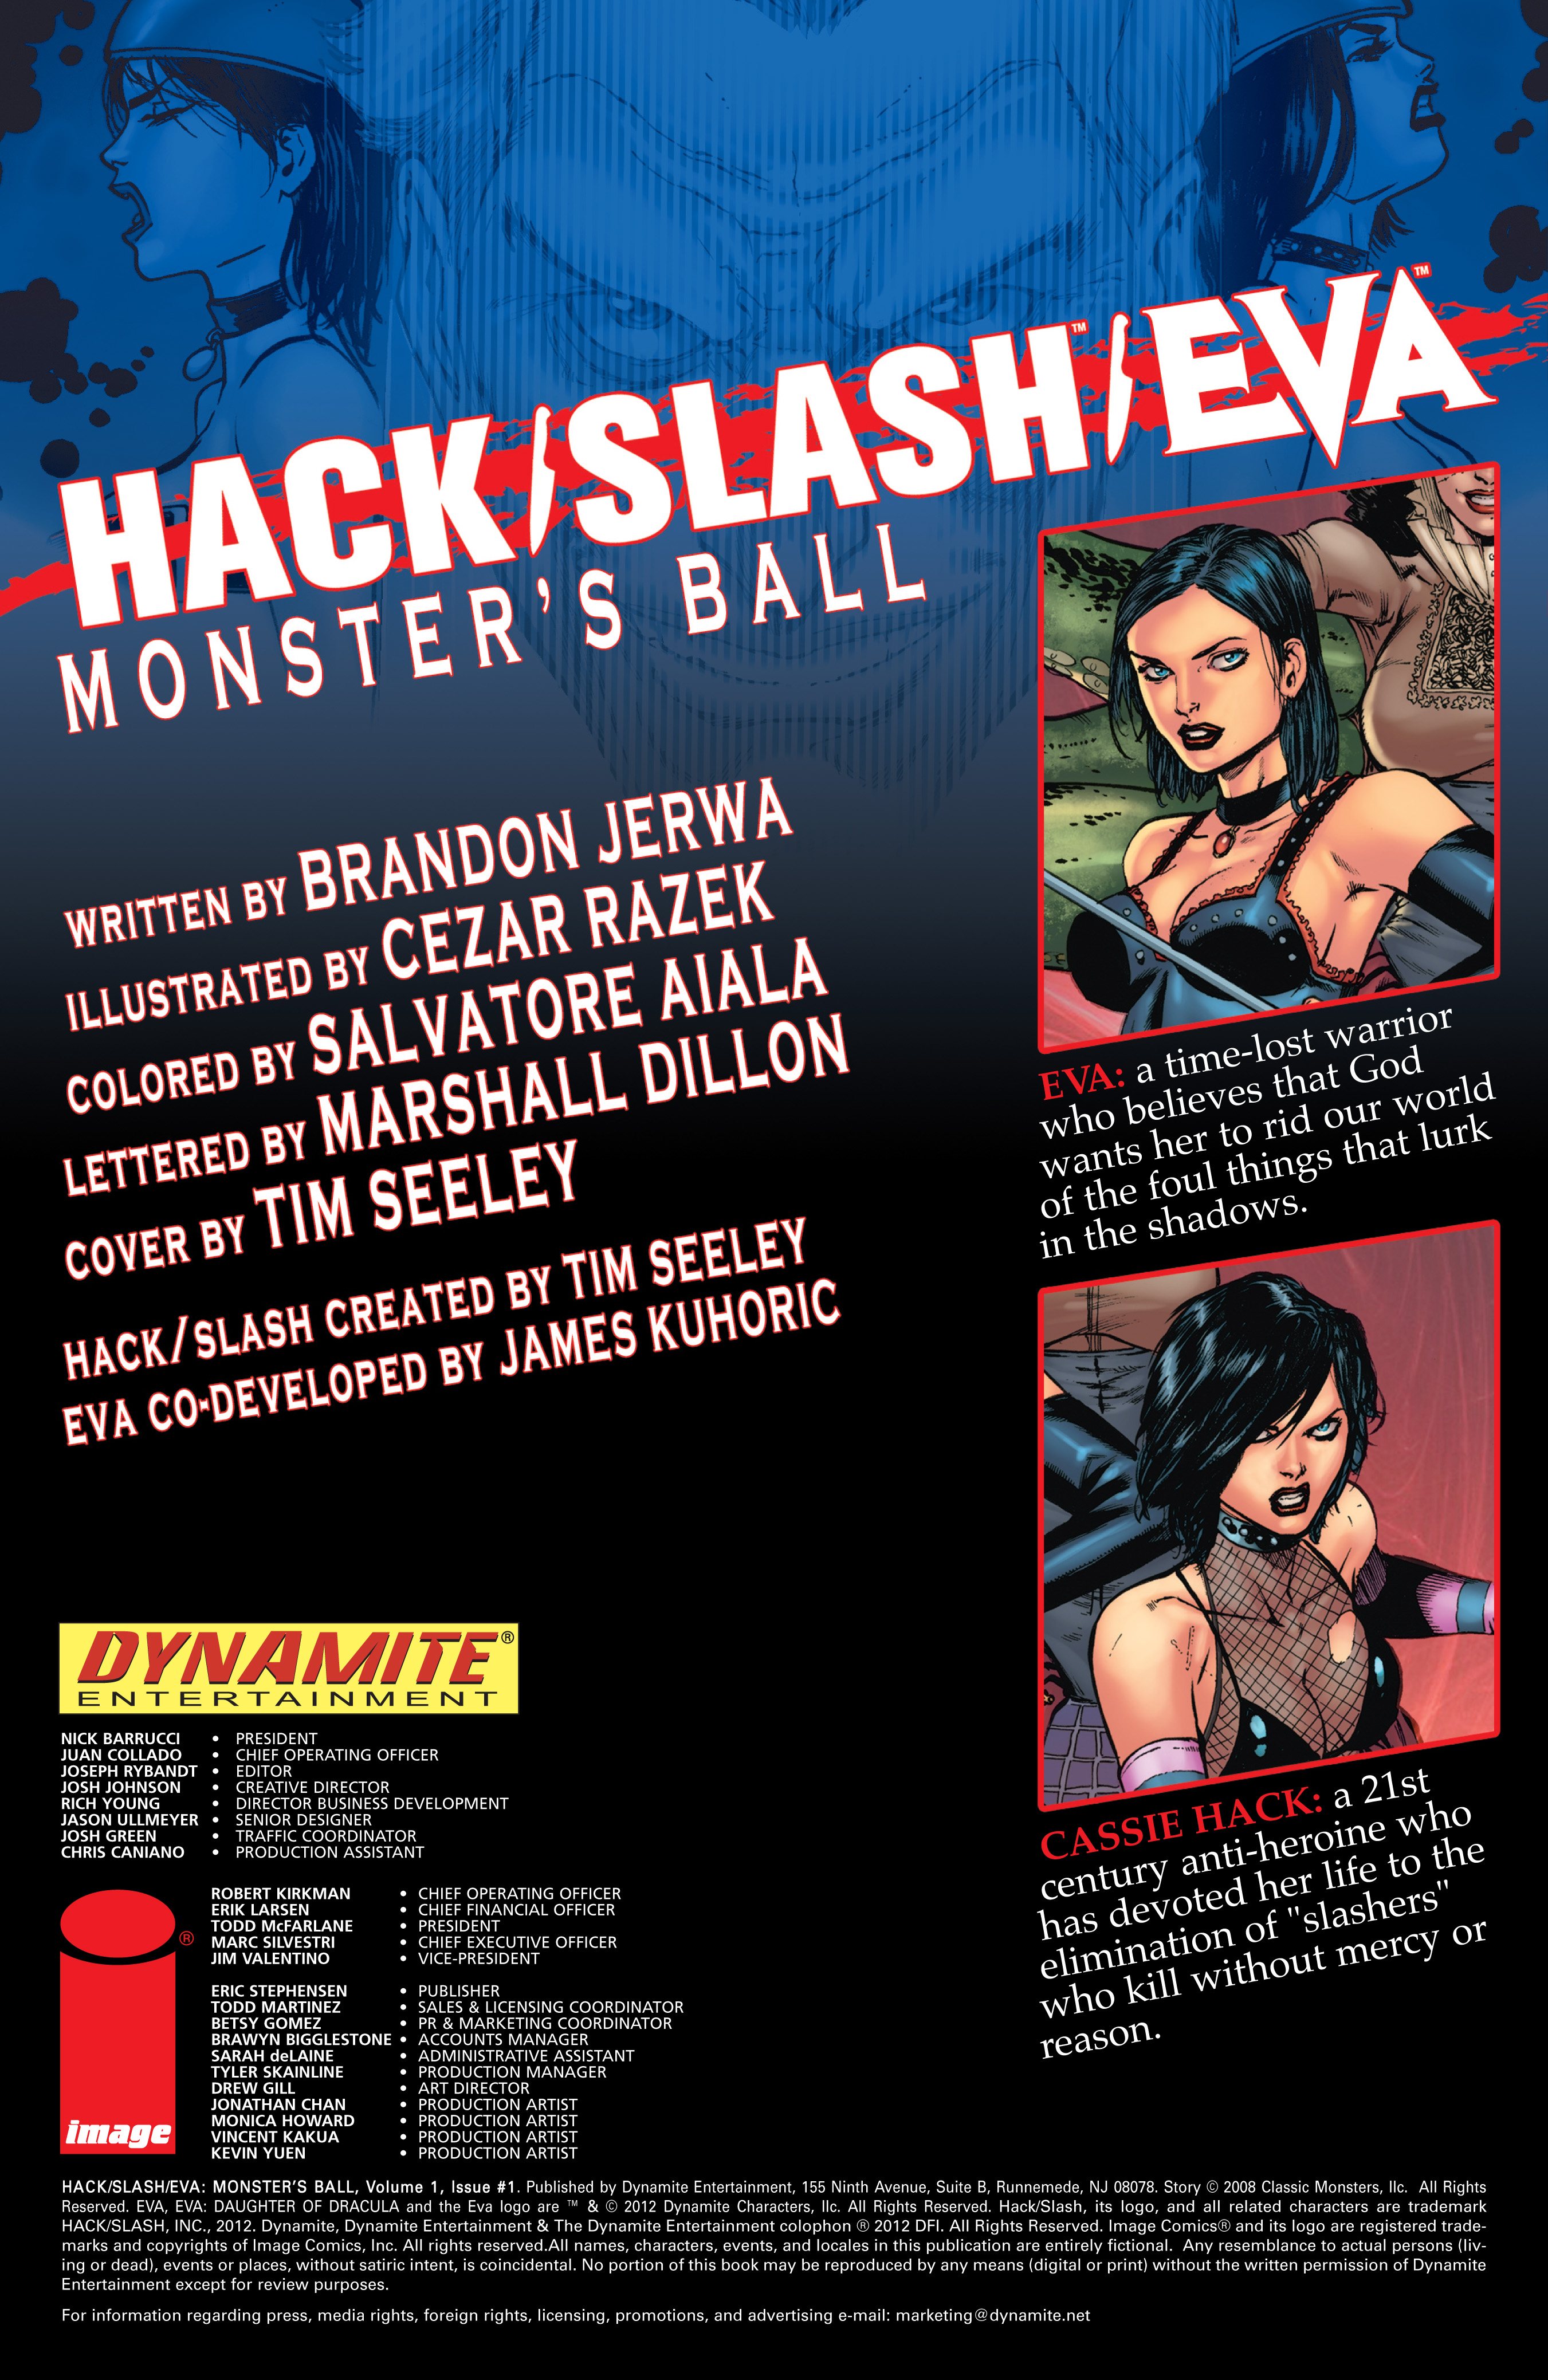 Read online Hack/Slash/Eva Monster's Ball comic -  Issue #1 - 2